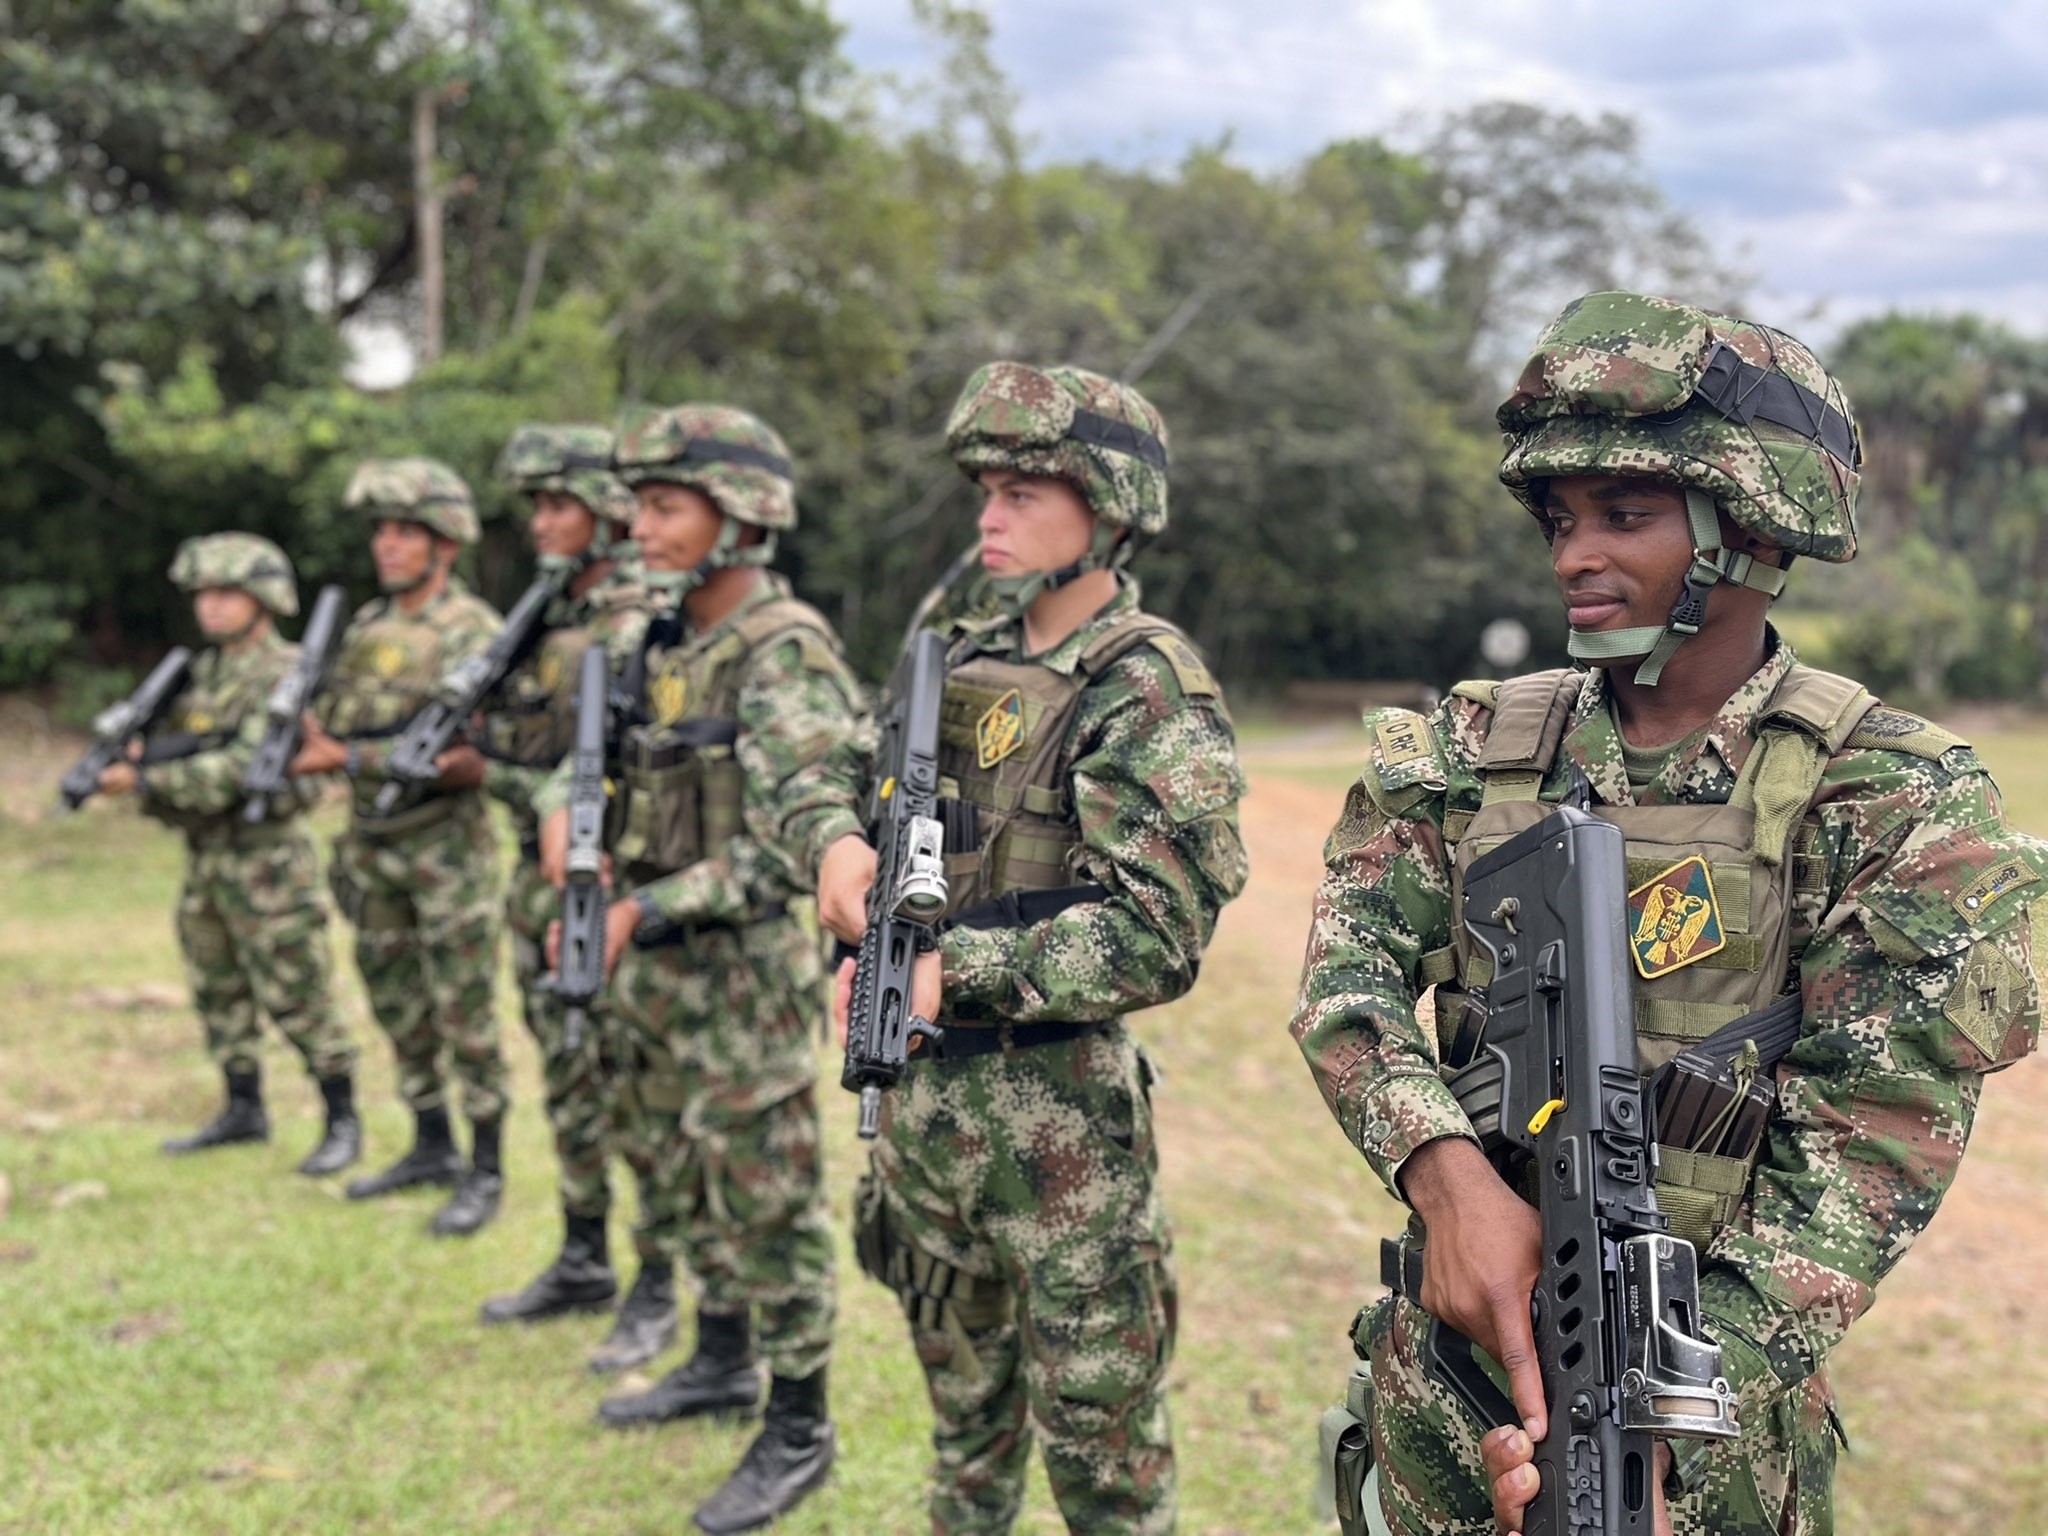 En este artículo se discute la decisión del Ejército Colombiano de retirar a 748 soldados profesionales que han cumplido con el tiempo de servicio y tienen derecho a pensión.